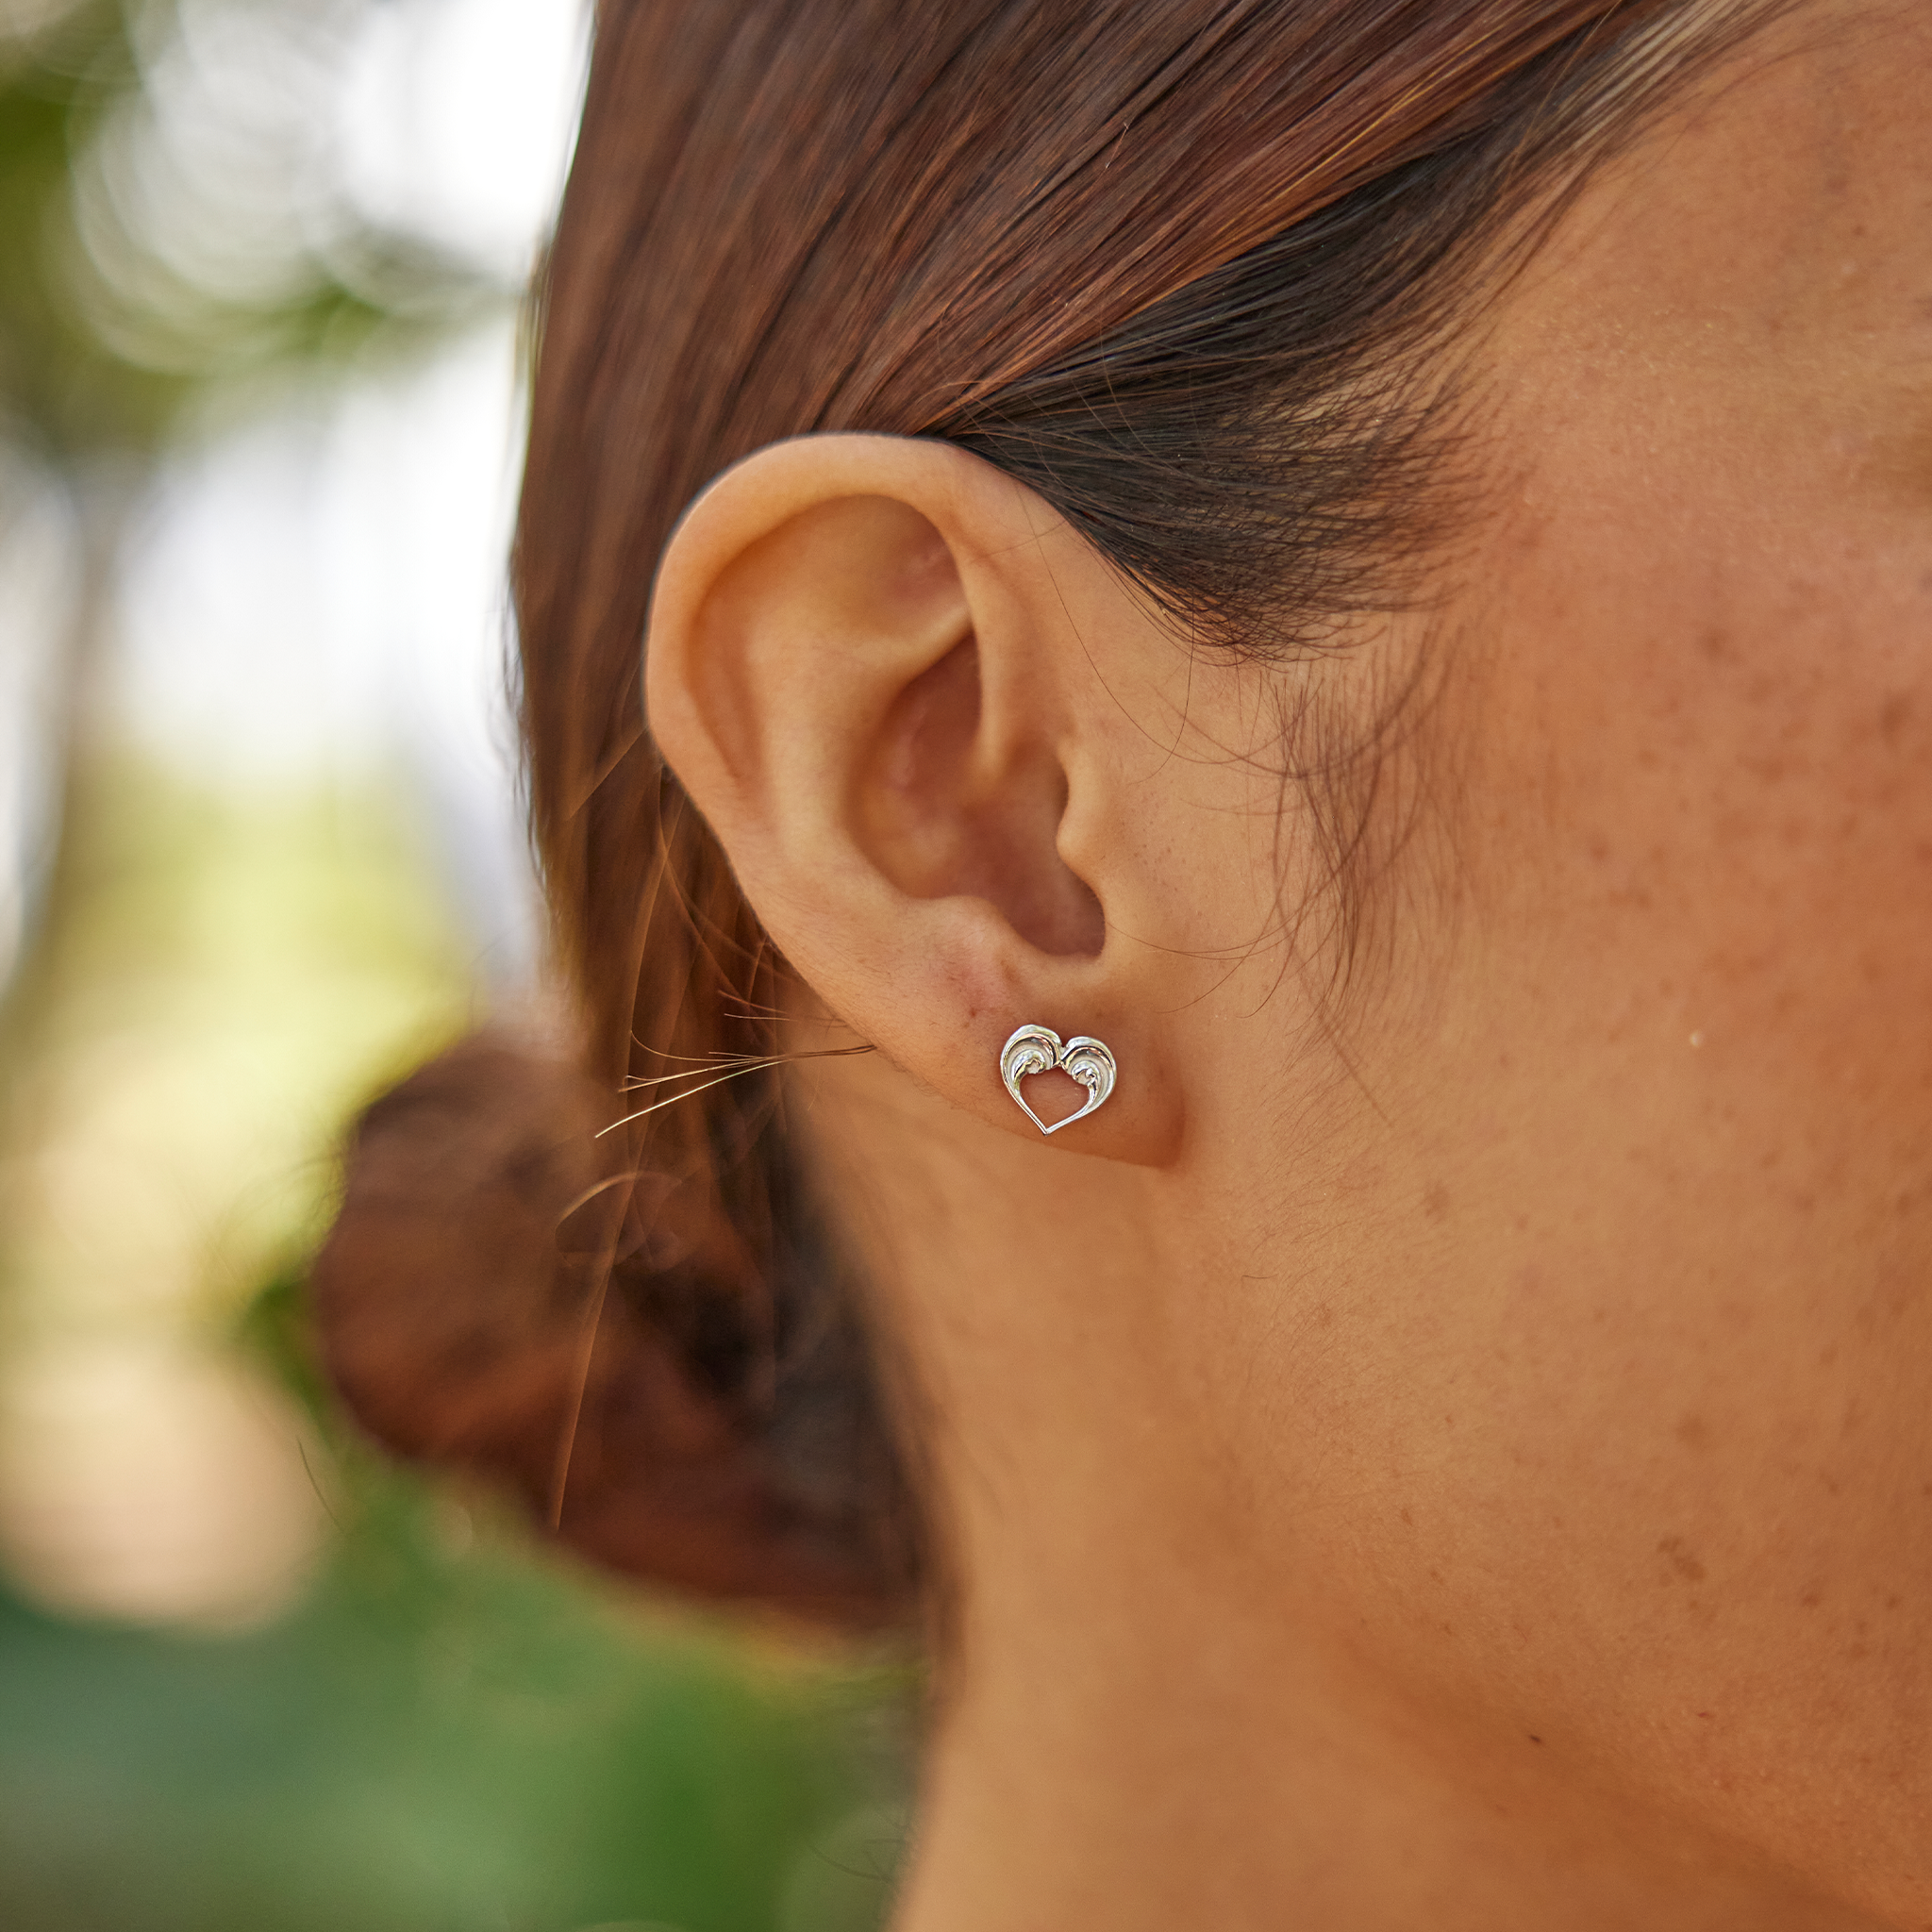 Nalu Heart Earrings in Sterling Silver - 8mm